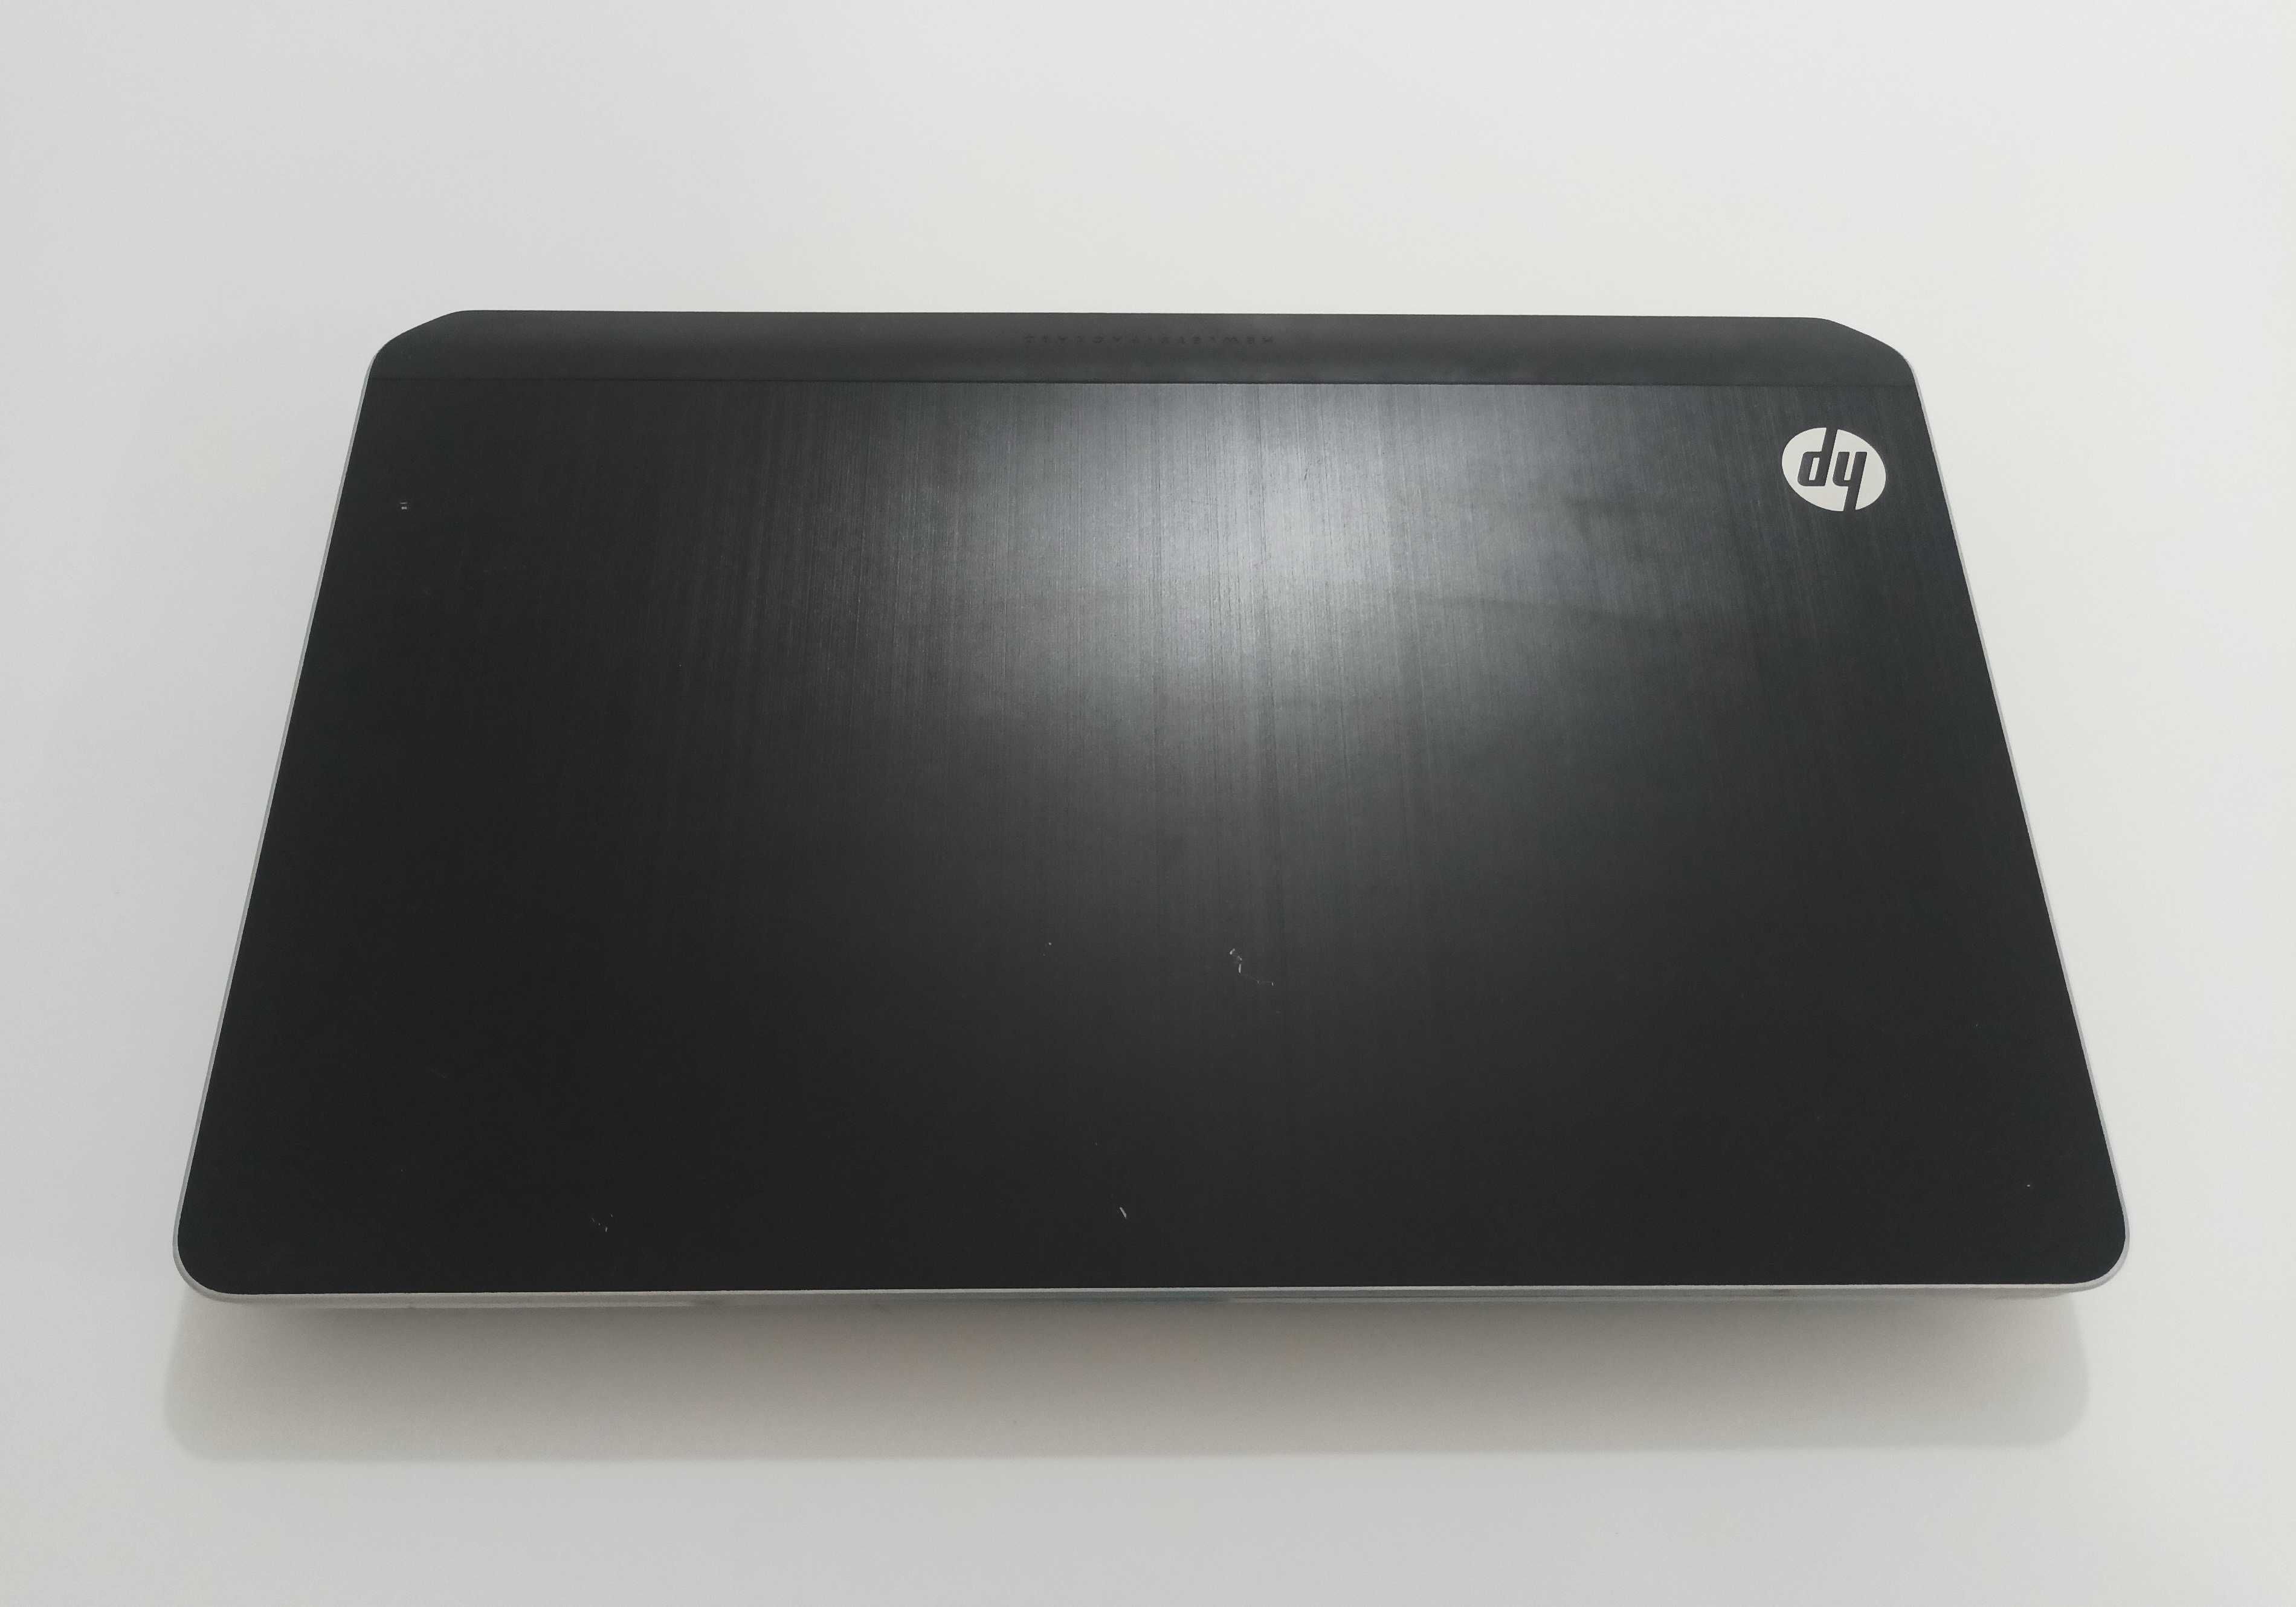 Laptop HP Pavilion DV6, I5 2,5 GHz, 8 GB RAM, HDD 1 TB, Beats, Blu-Ray